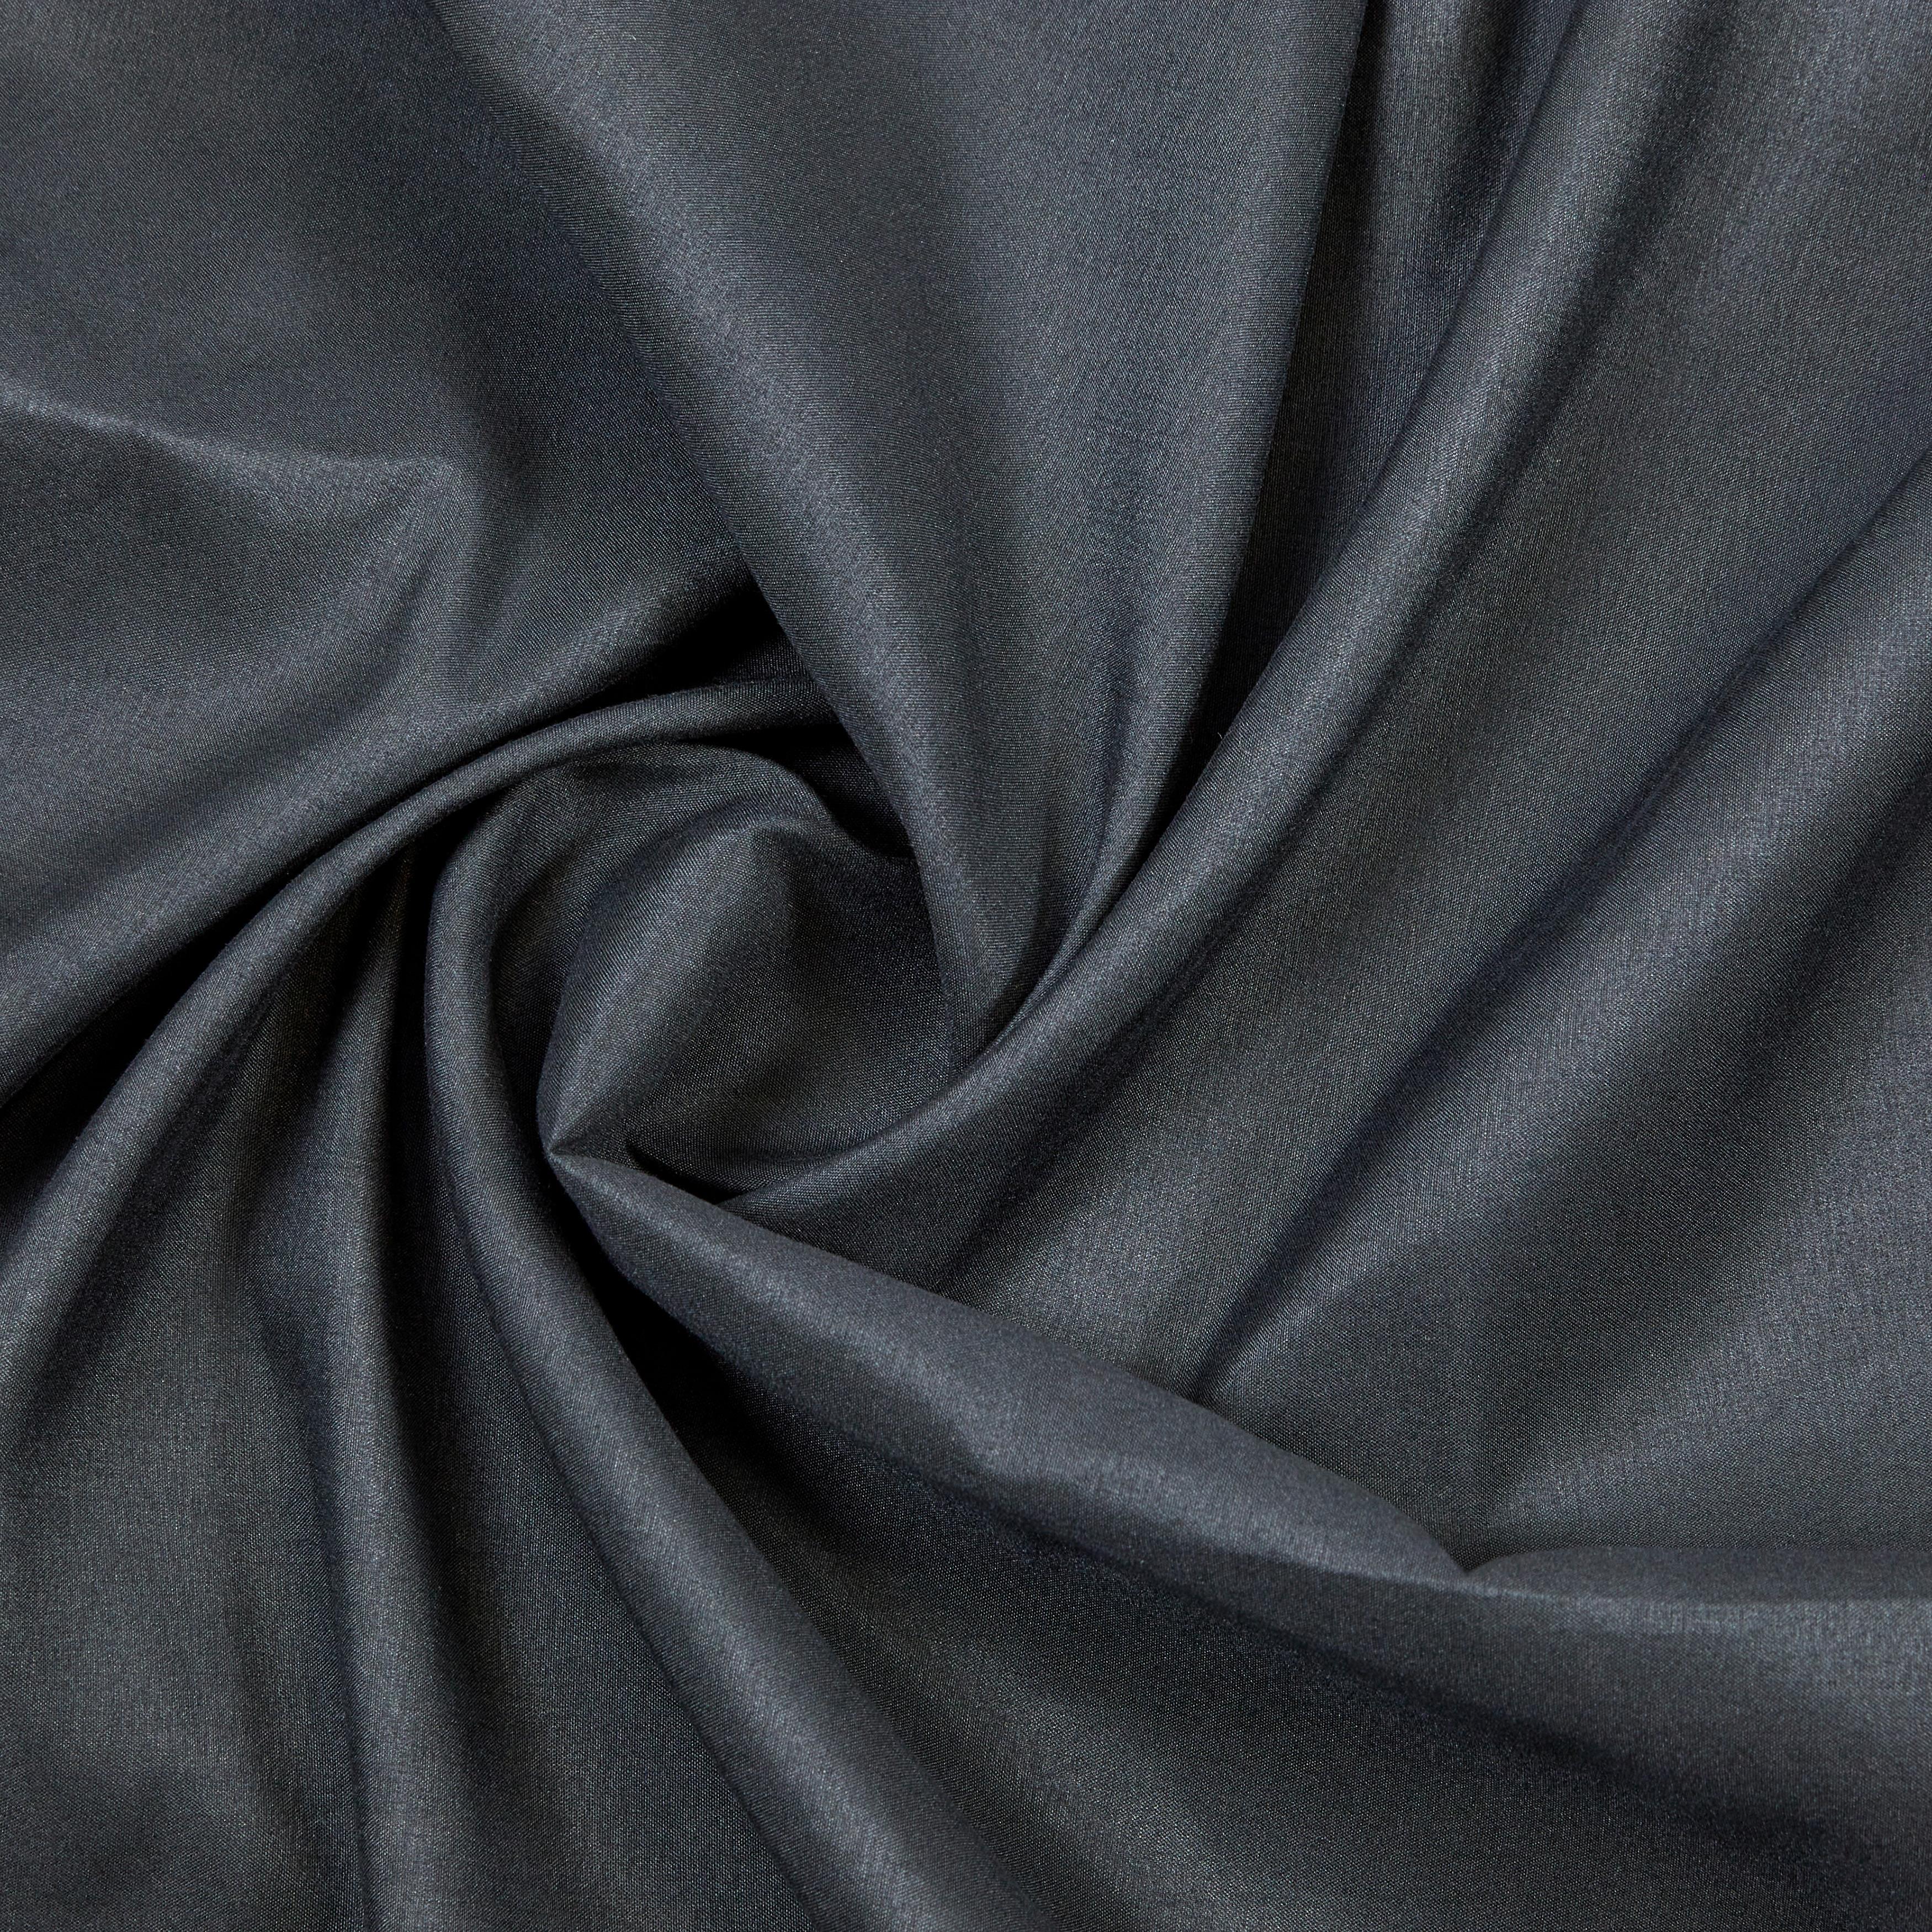 Záves S Očkami Abby, 140/235 Cm - čierna, Konvenčný, textil (140/235cm) - Modern Living